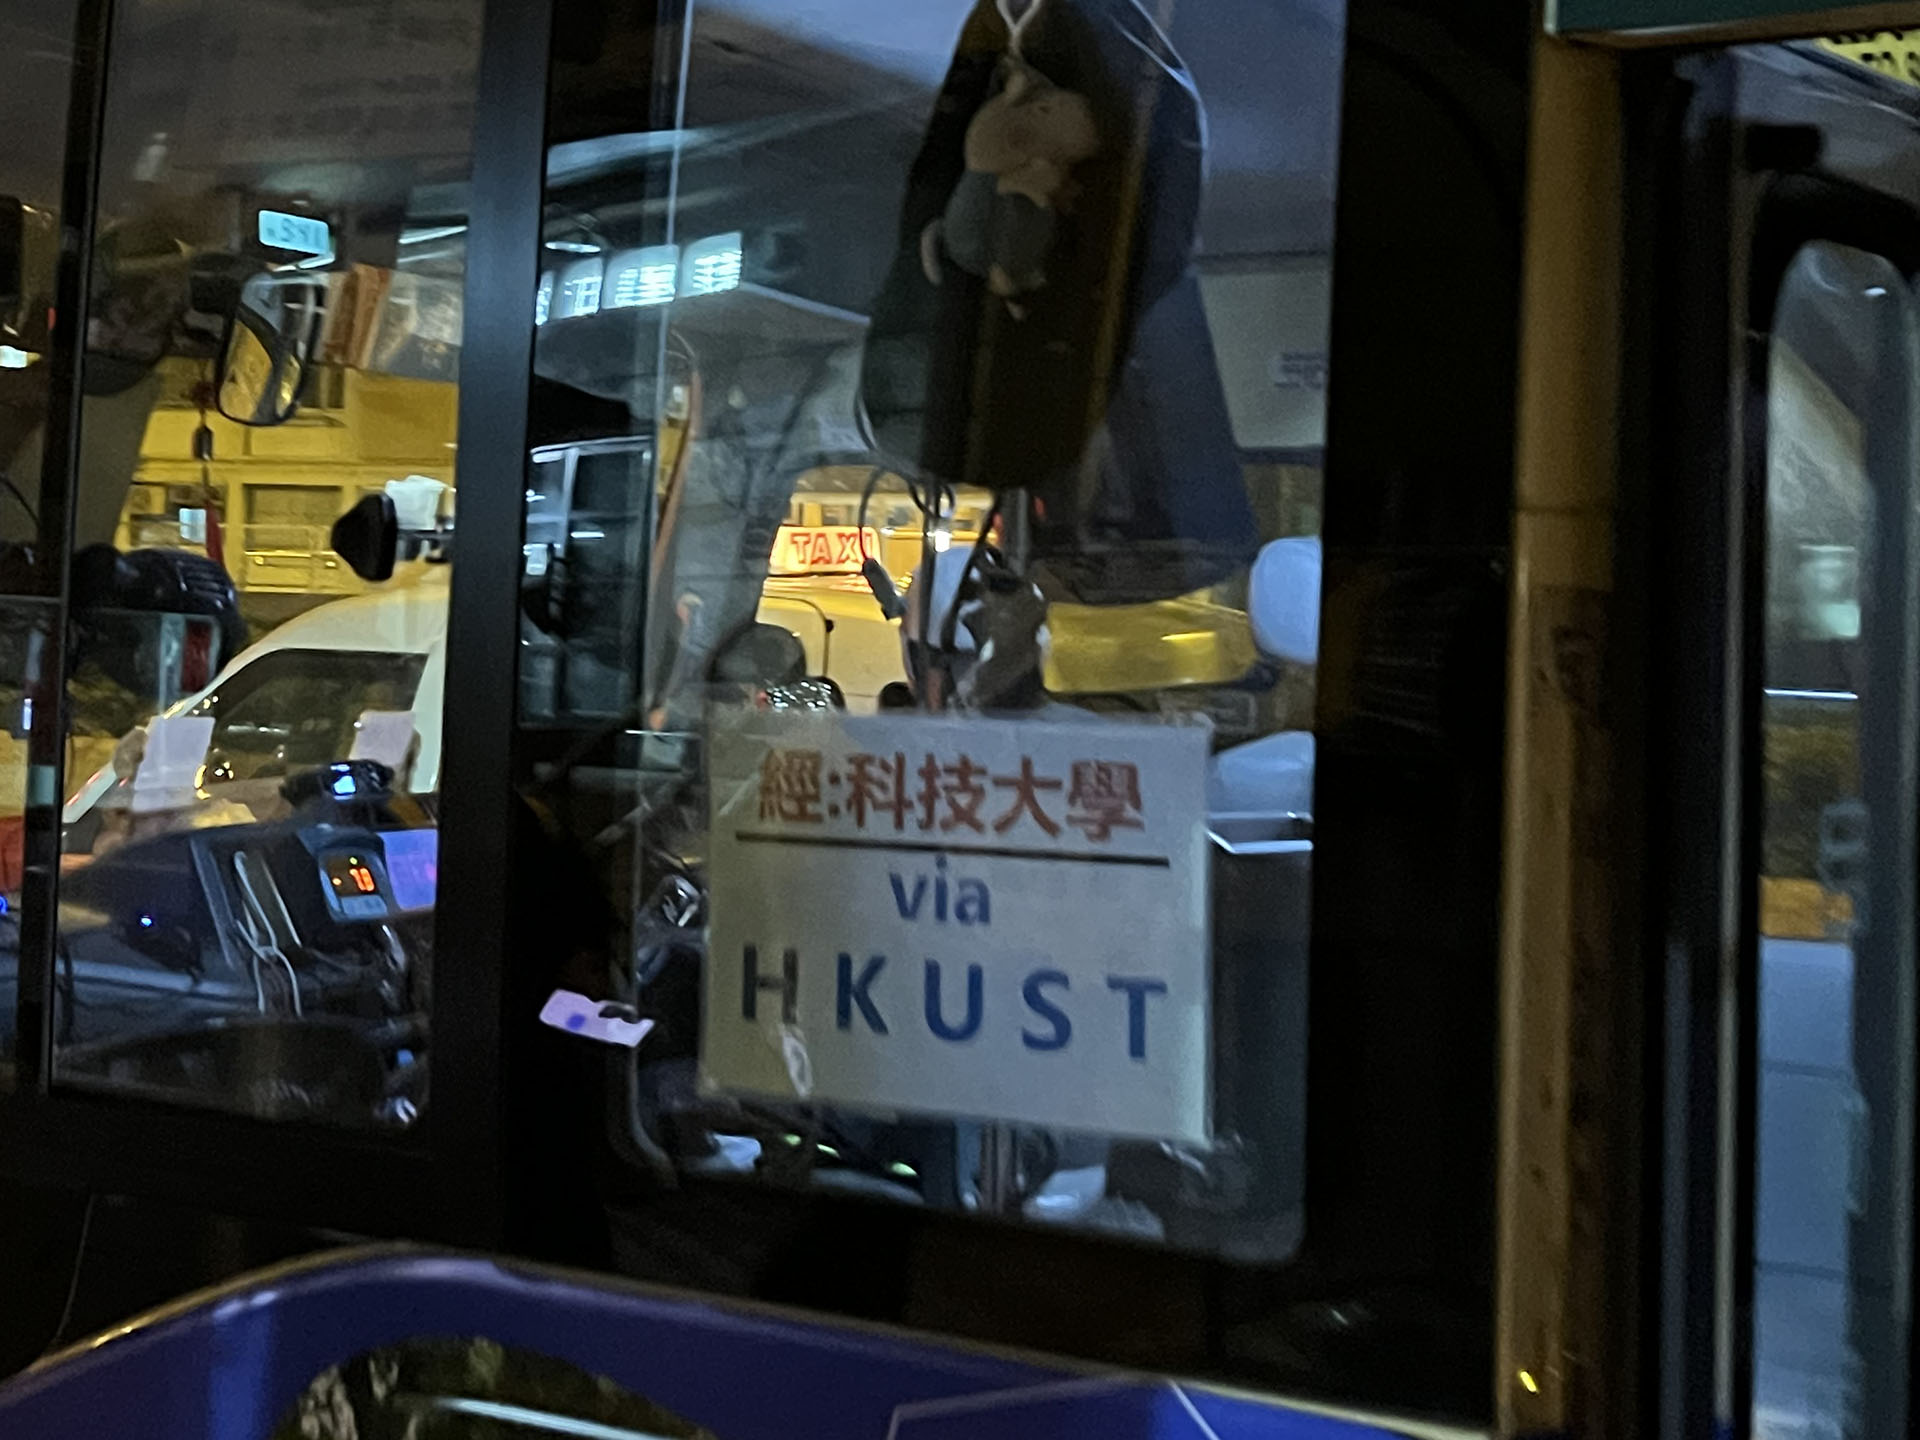 小巴车门旁“经：科技大学 (via HKUST)”人性化标志